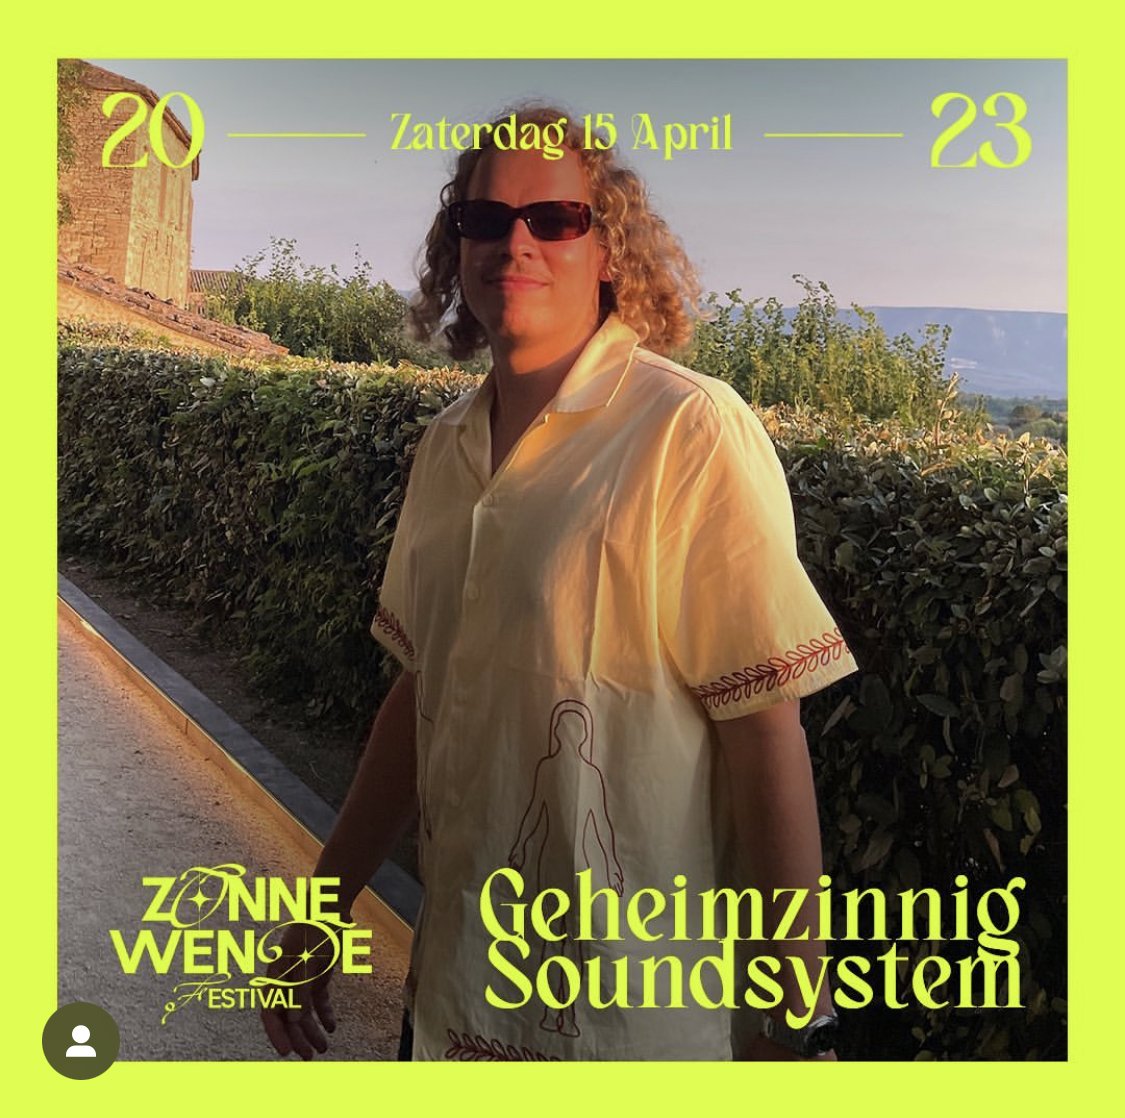 Foto  van Geheimzinnig Soundsystem en Zonnewende Festival 2023, in opdracht van Zonnewende